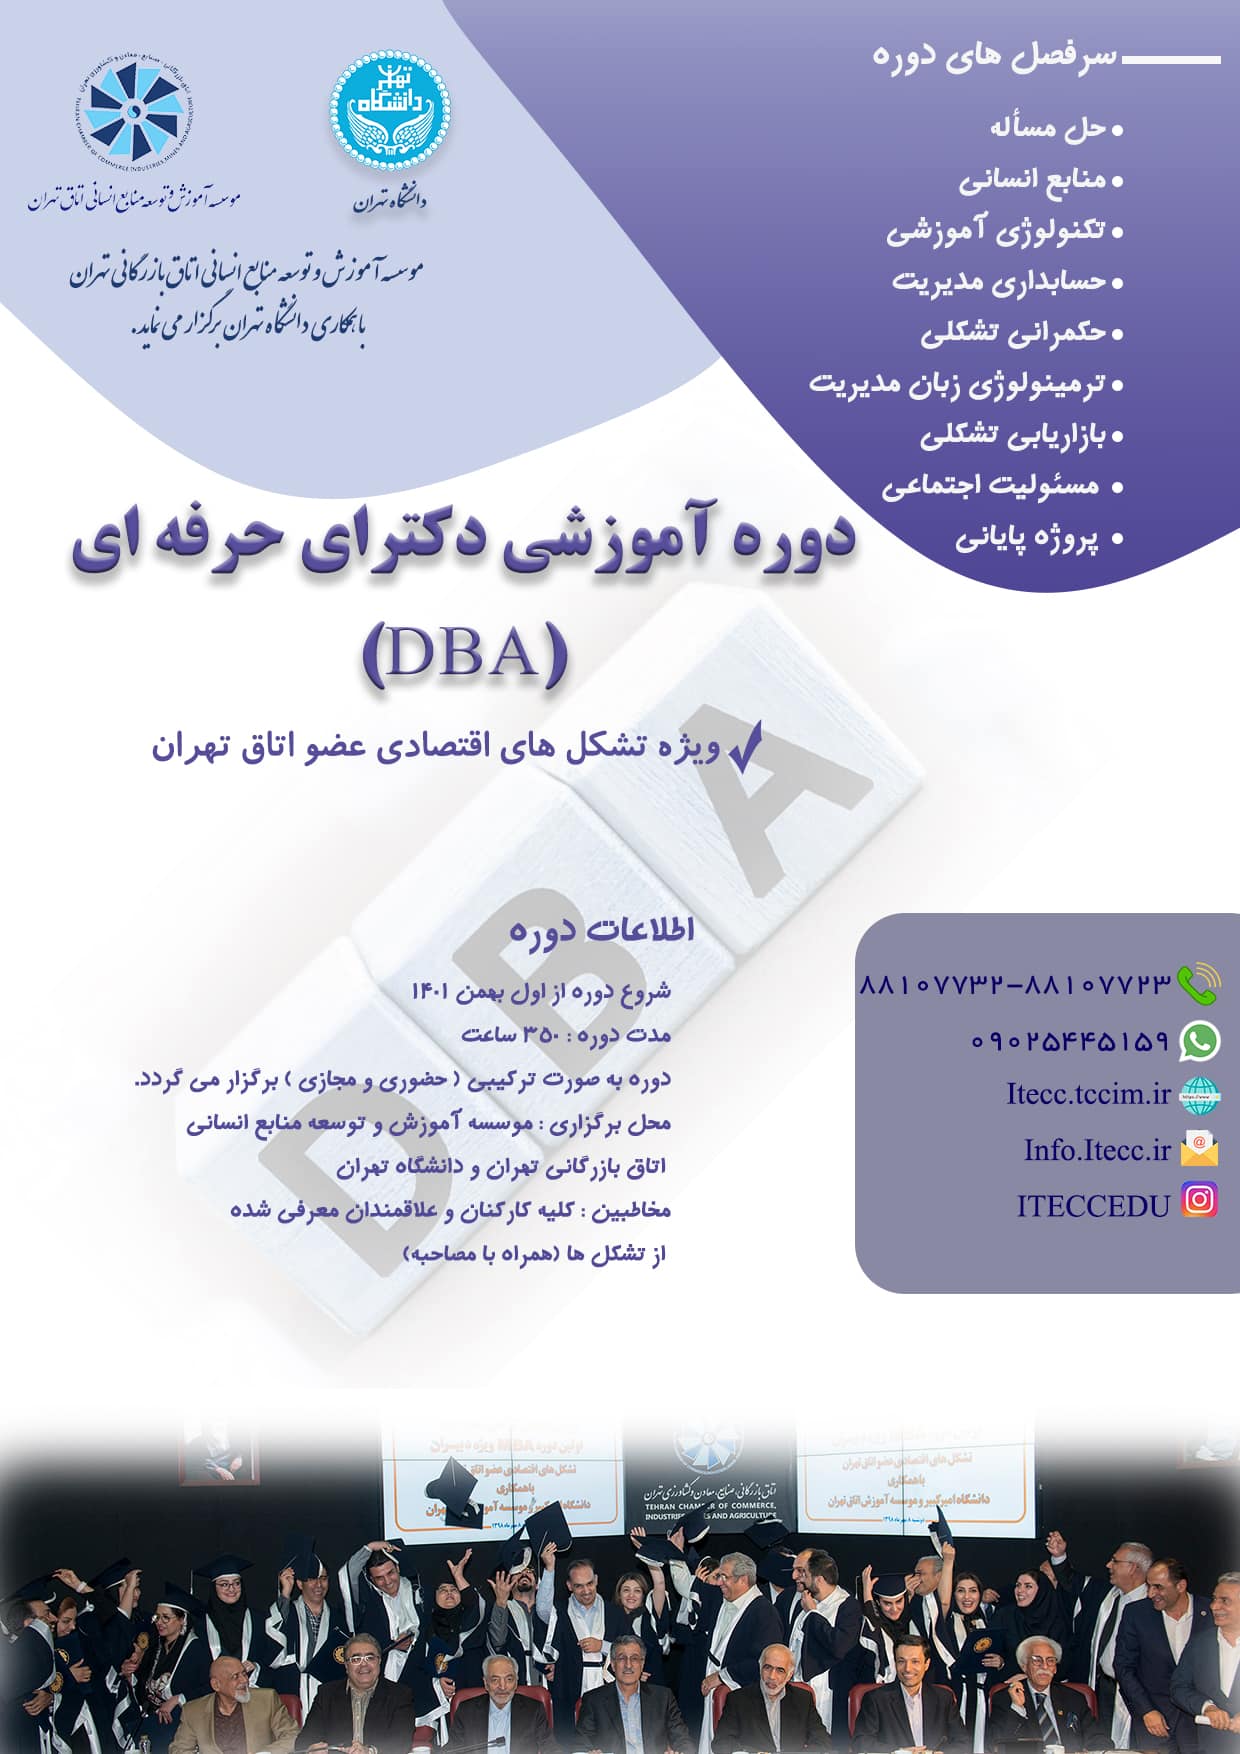 دوره آموزشی دکترای حرفه ای (DBA) ویژه تشکل های اقتصادی عضو اتاق تهران (2)